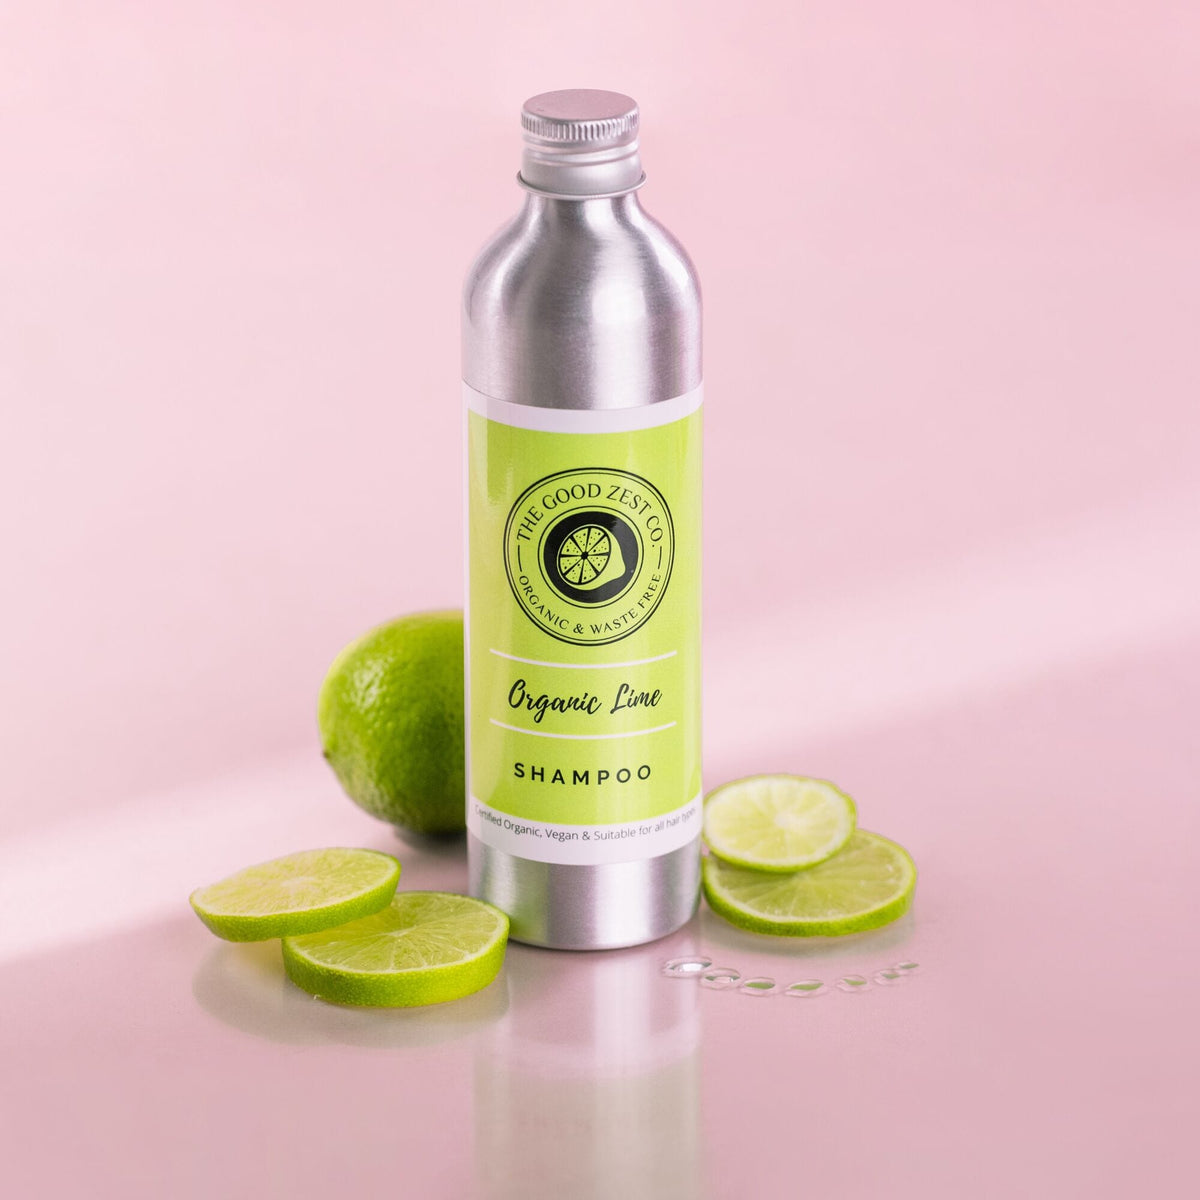 The Good Zest Co. Organic Lime Shampoo